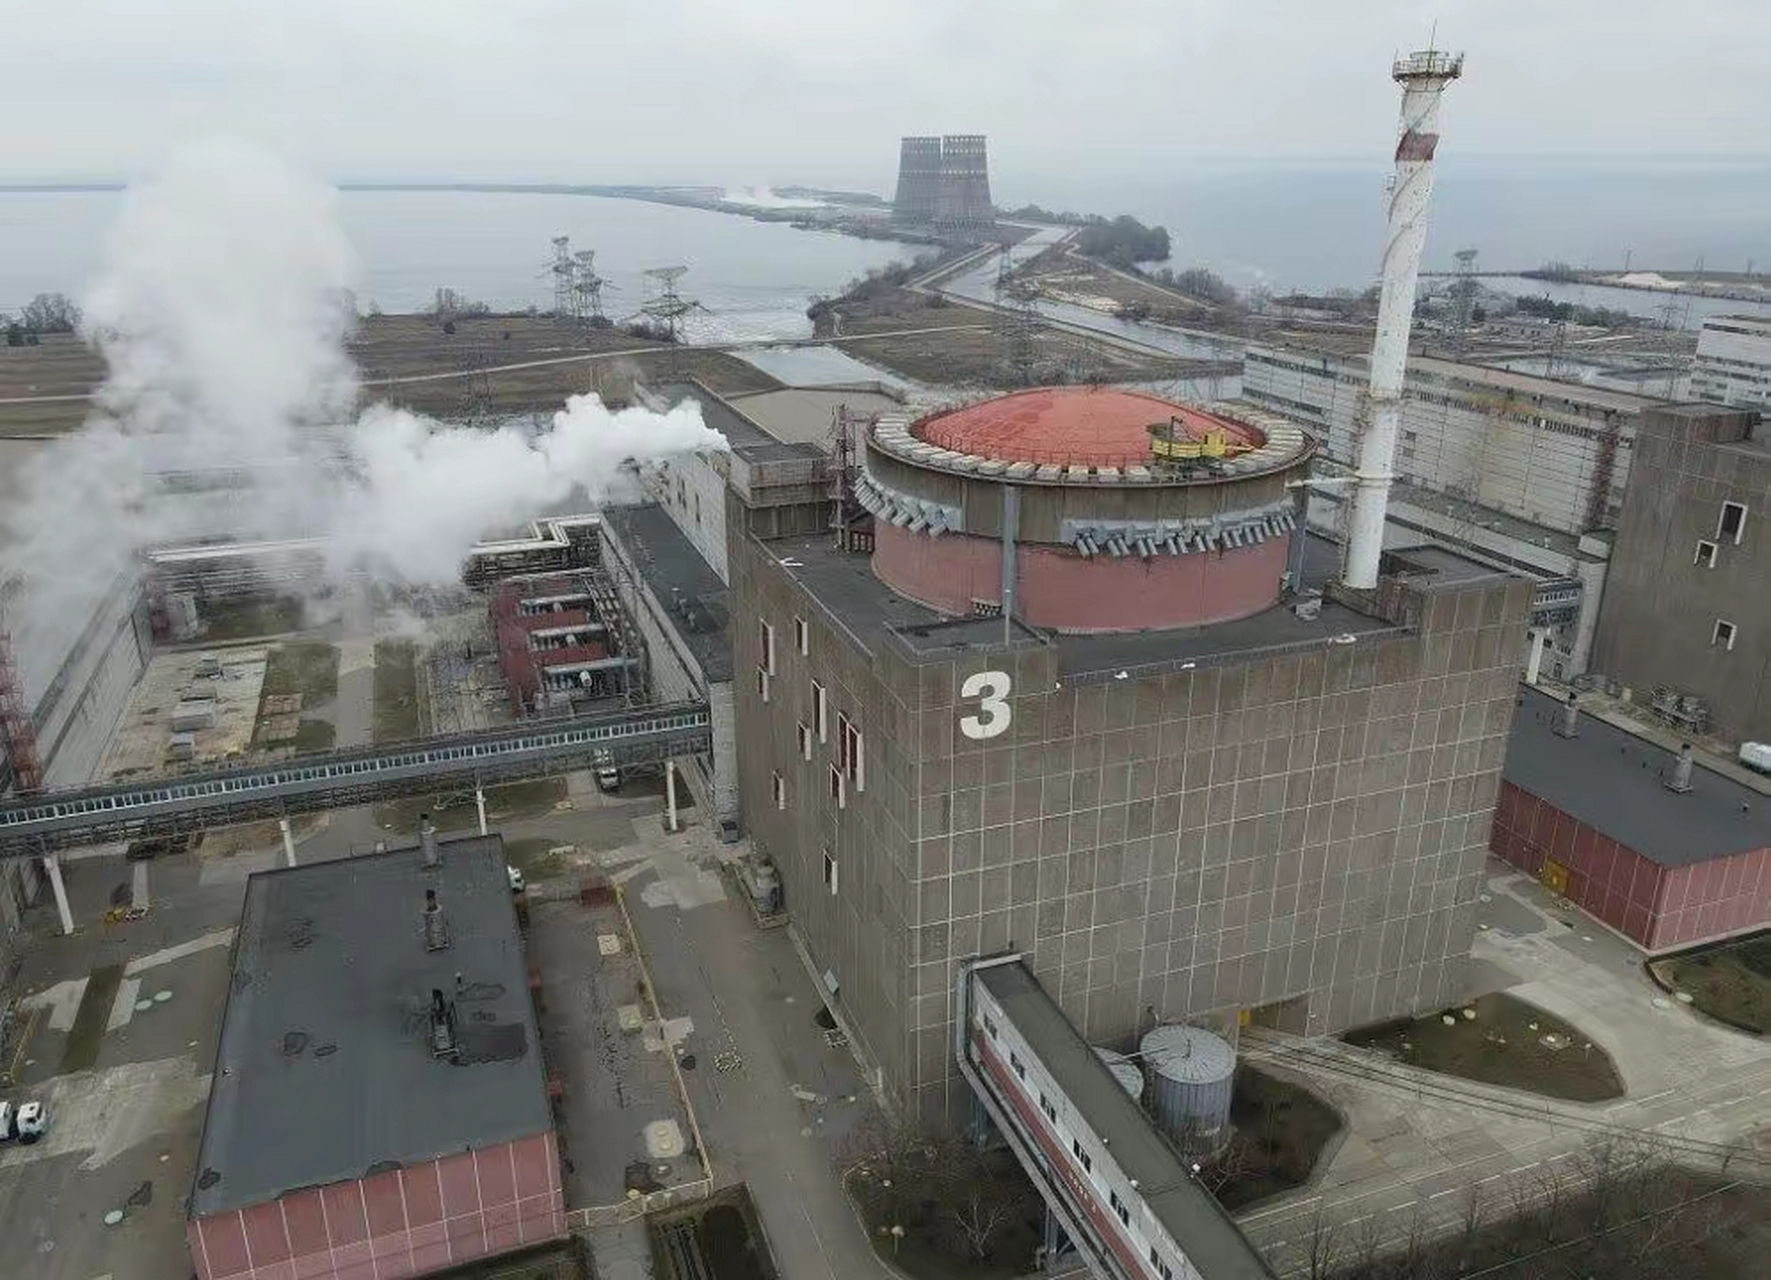 扎波罗热核电站发生爆炸将带来严重的全球后果以下是可能的影响:  1